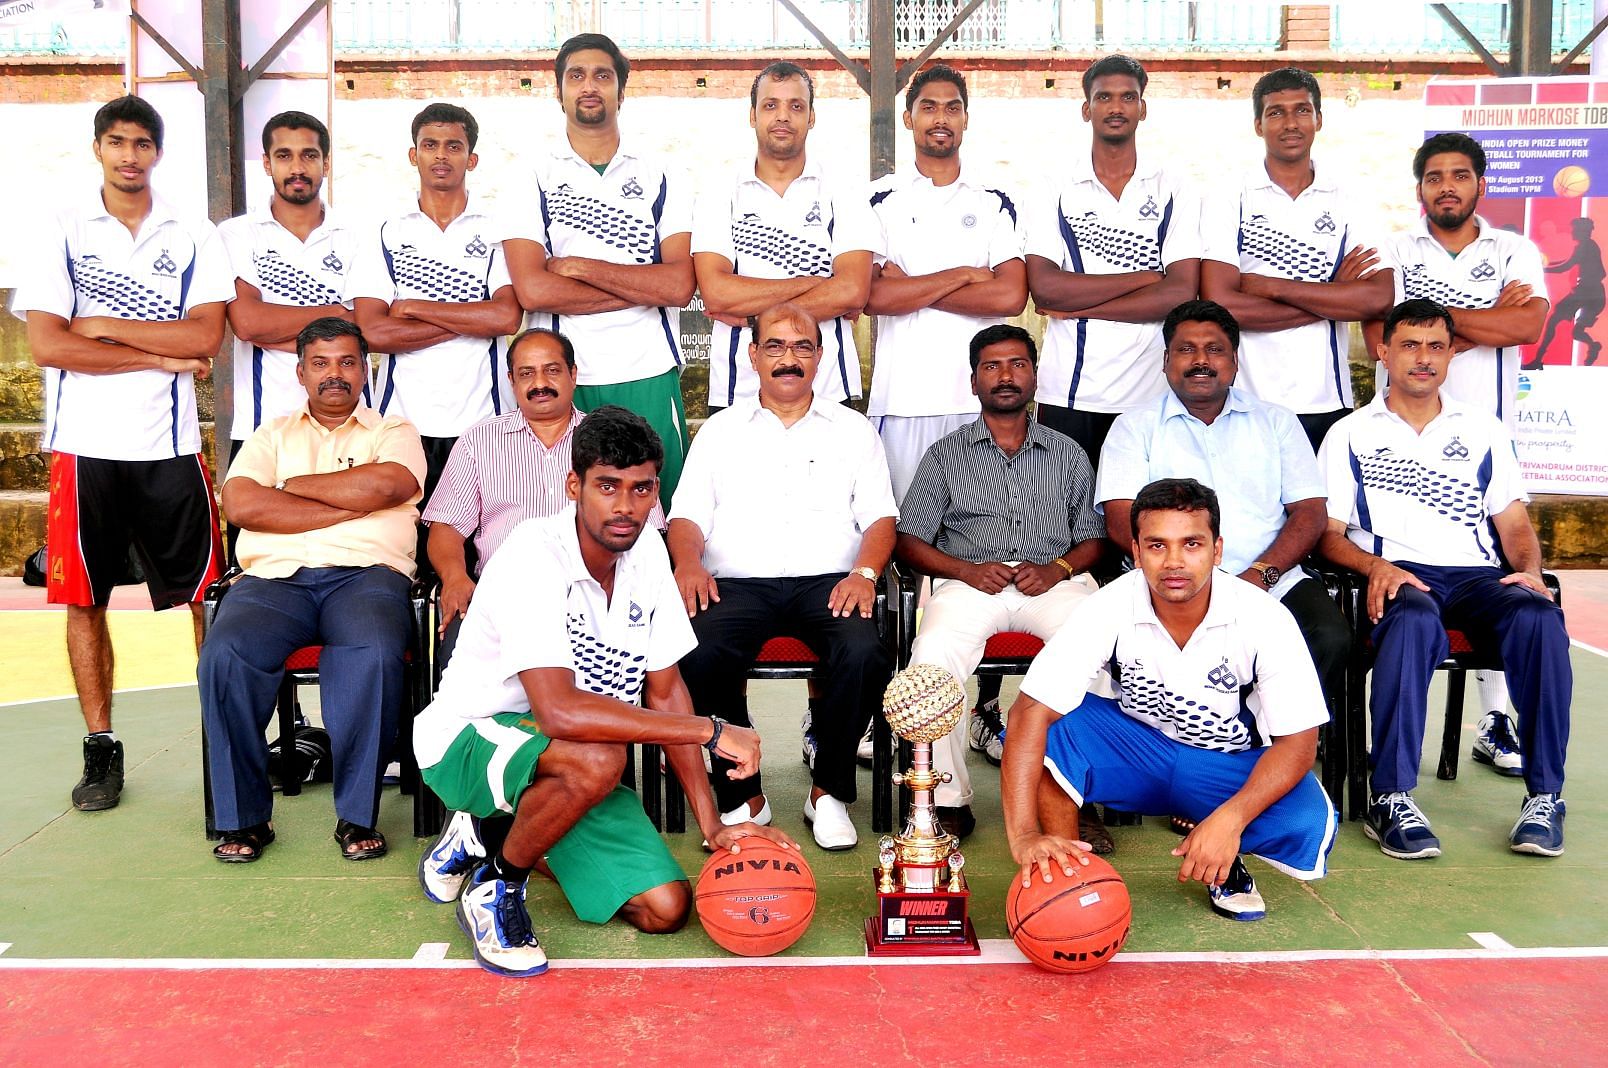 Men&acirc;s Champions IOB, Chennai